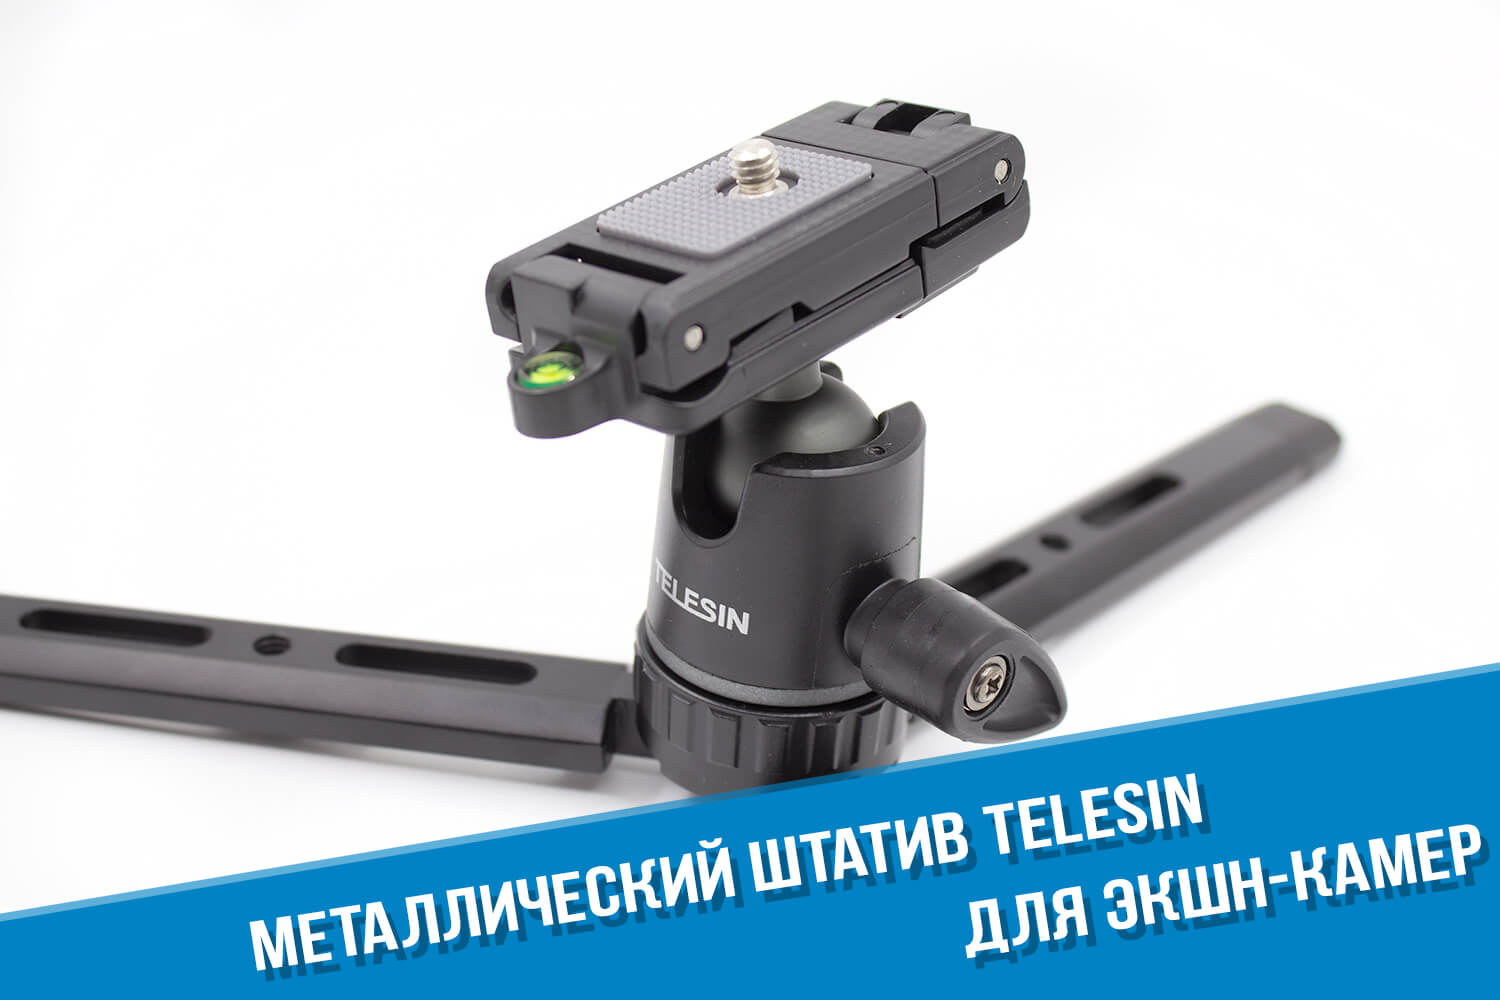 Металлический штатив для экшн-камеры GoPro HERO фирмы Telesin с шаровой головкой